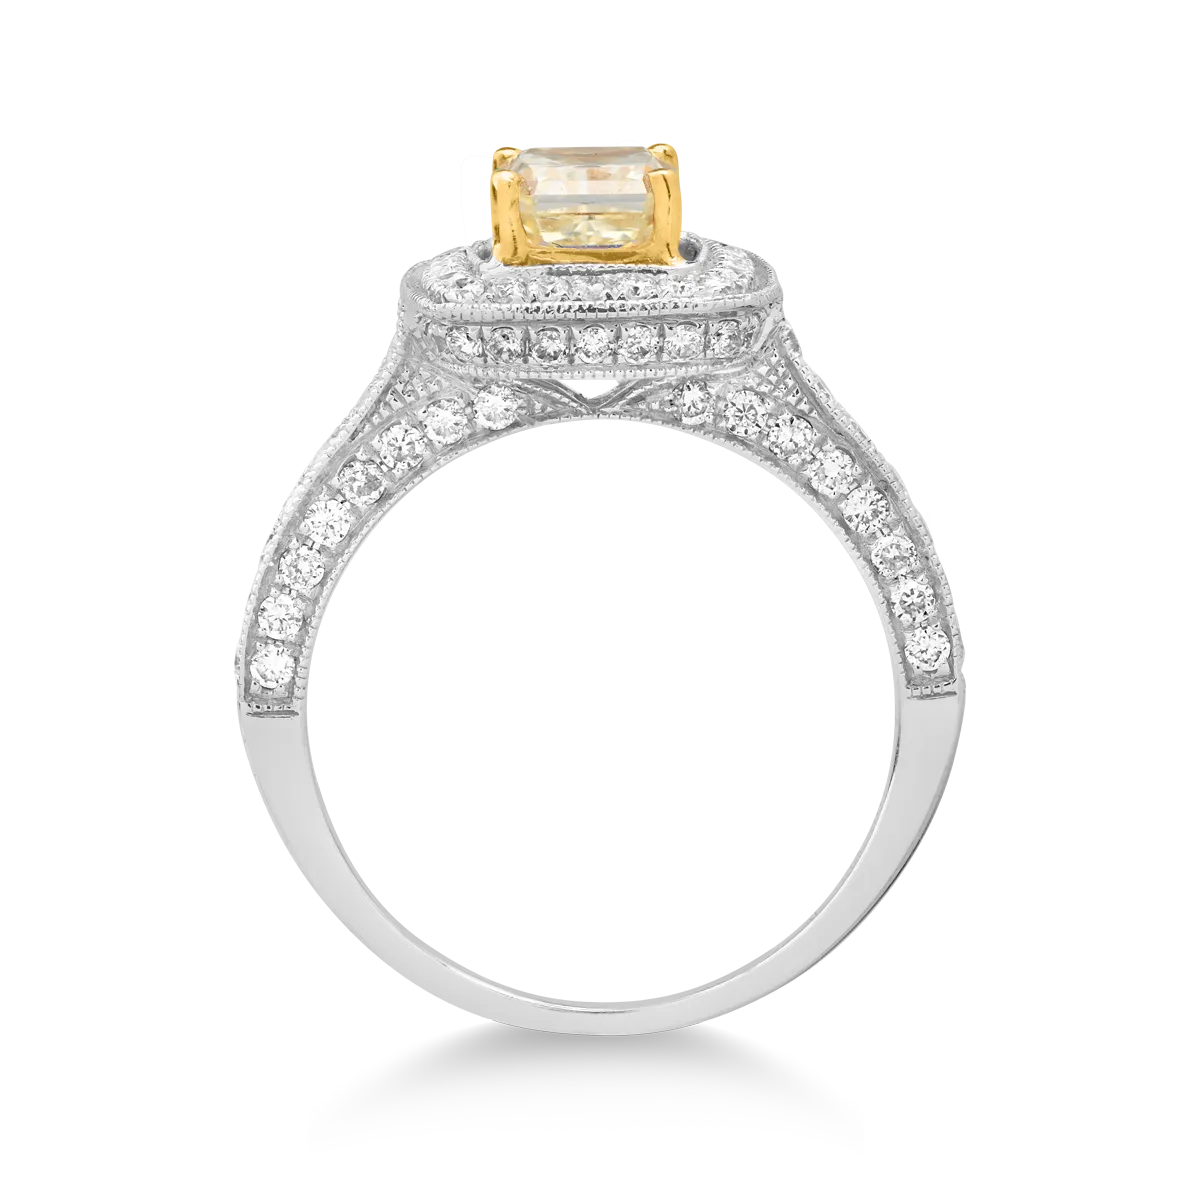 Inel din aur alb de 18K cu fancy diamond de 1.11 si diamante transparente de 0.8ct